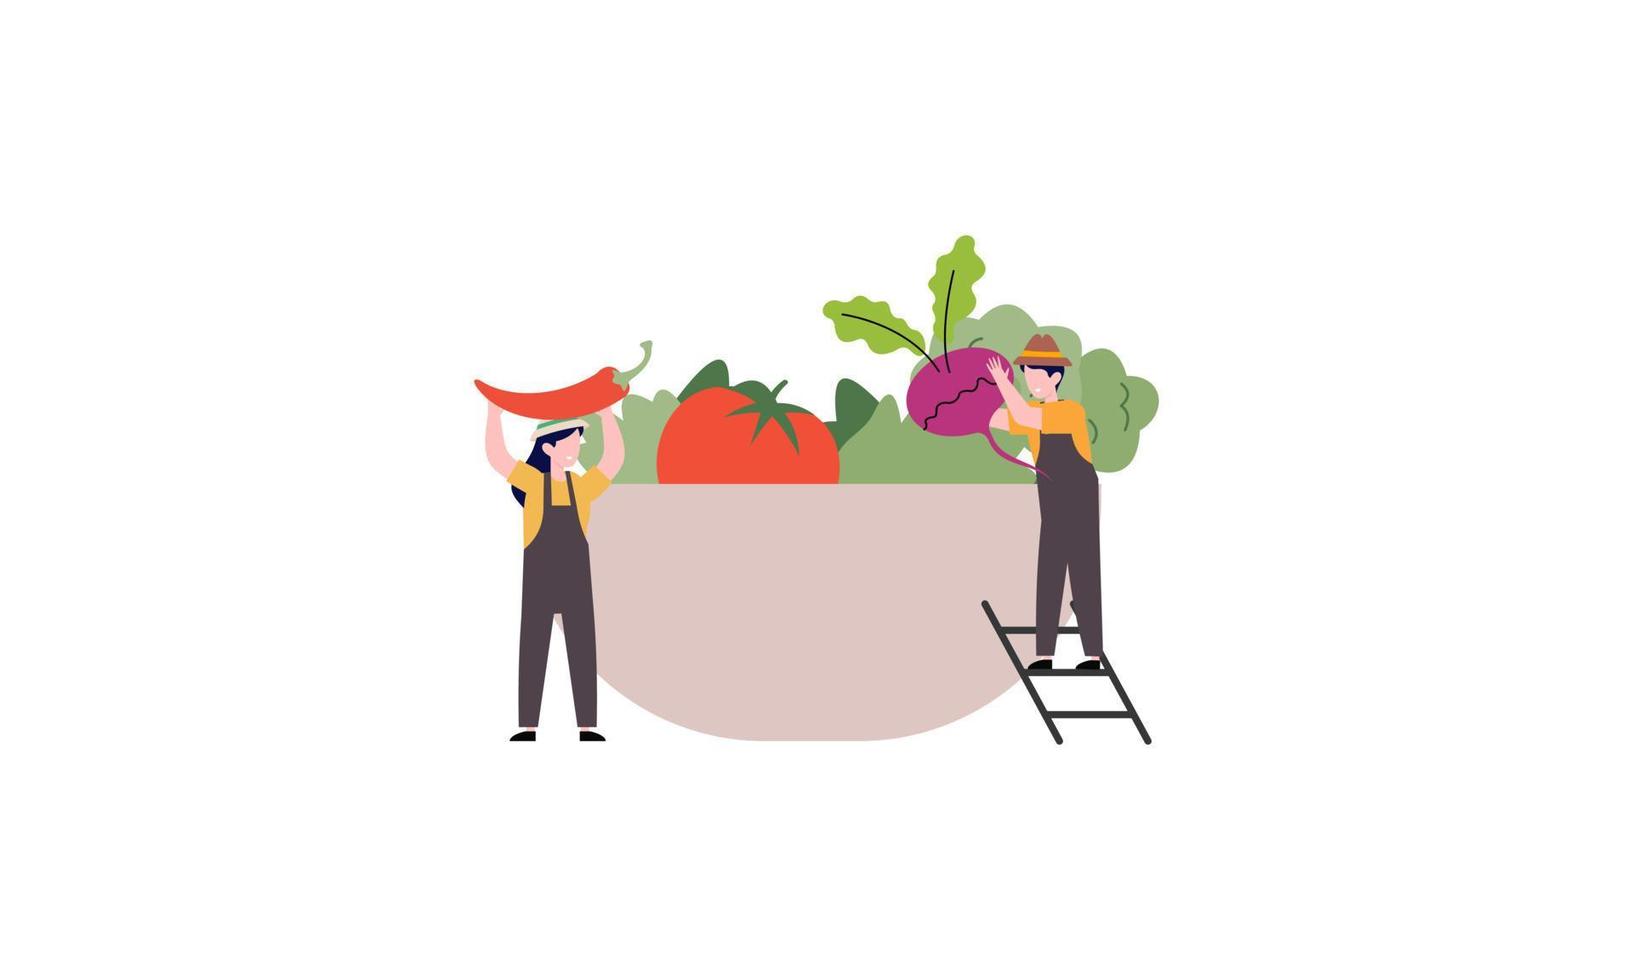 klein boer en verkoop vers boerderij groenten naar koper illustratie concept vector